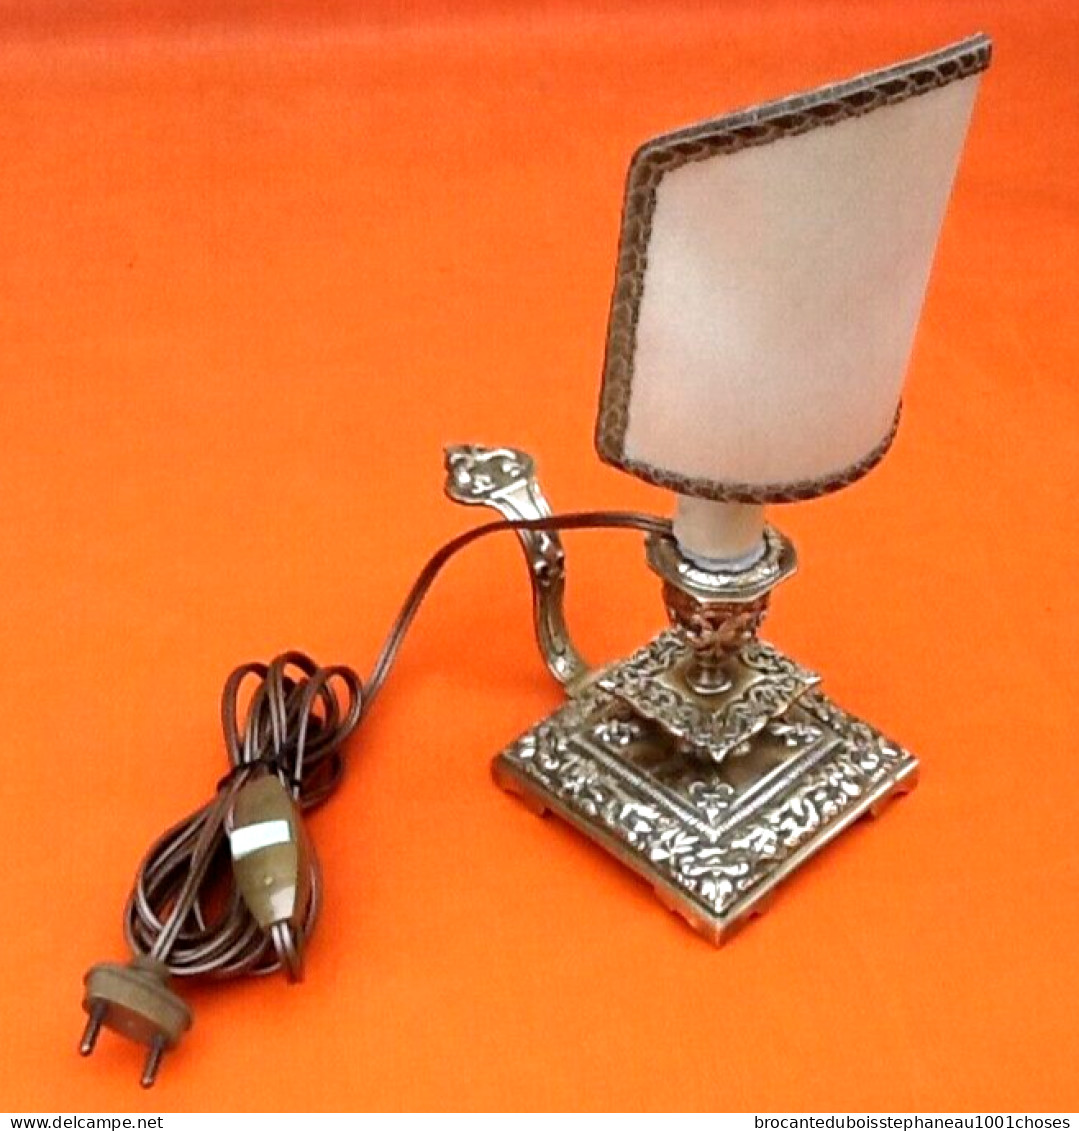 Epoque fin XIXème Lampe à poser Bougeoir à main Abat jour demi-bouclier à pince  Bronze ciselé